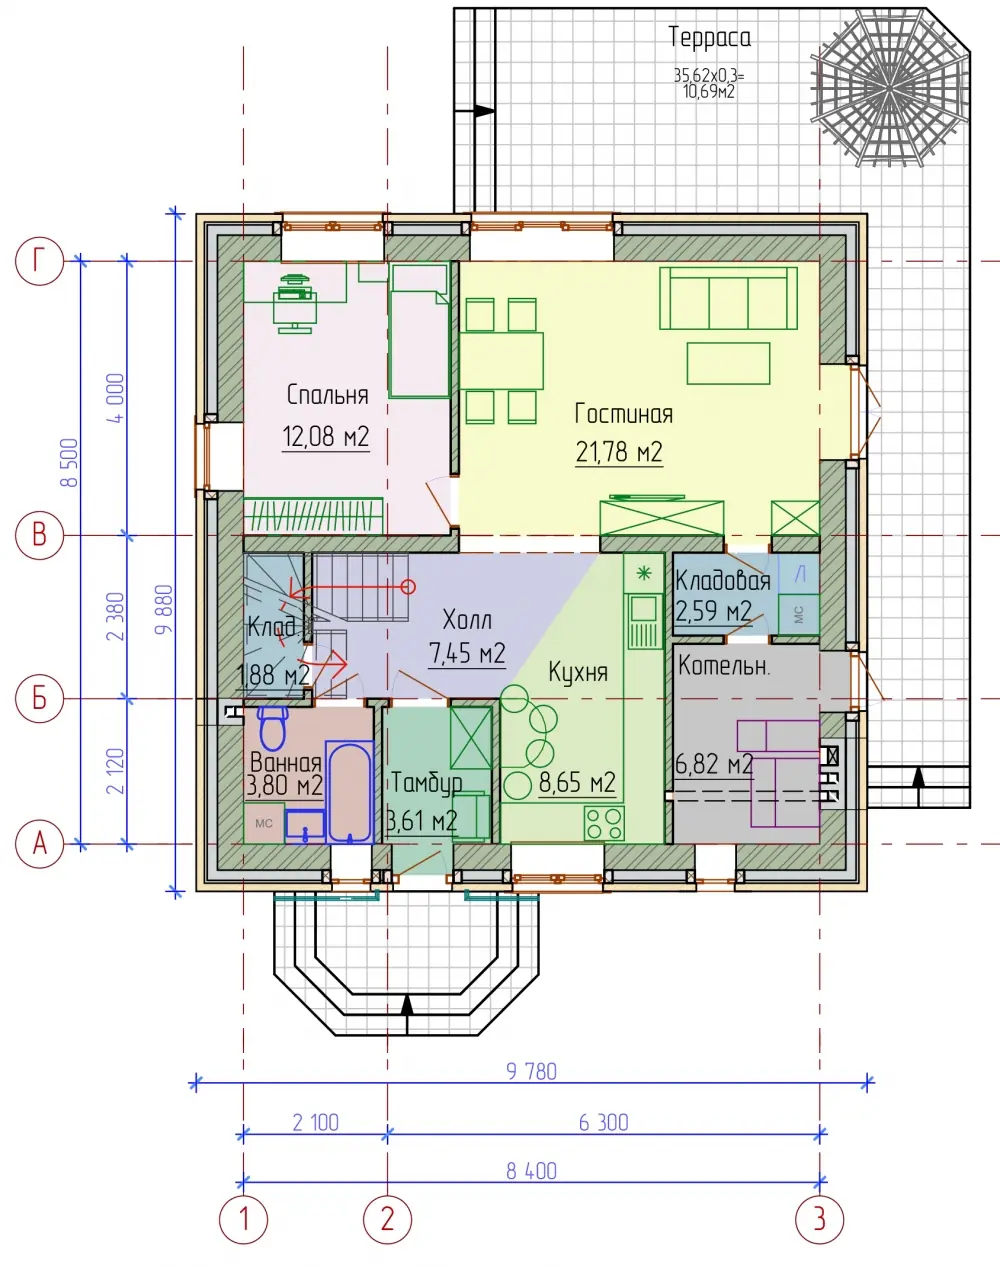 Планировка 1-го этажа кирпичного дома с мансардой. Проект № 295-01